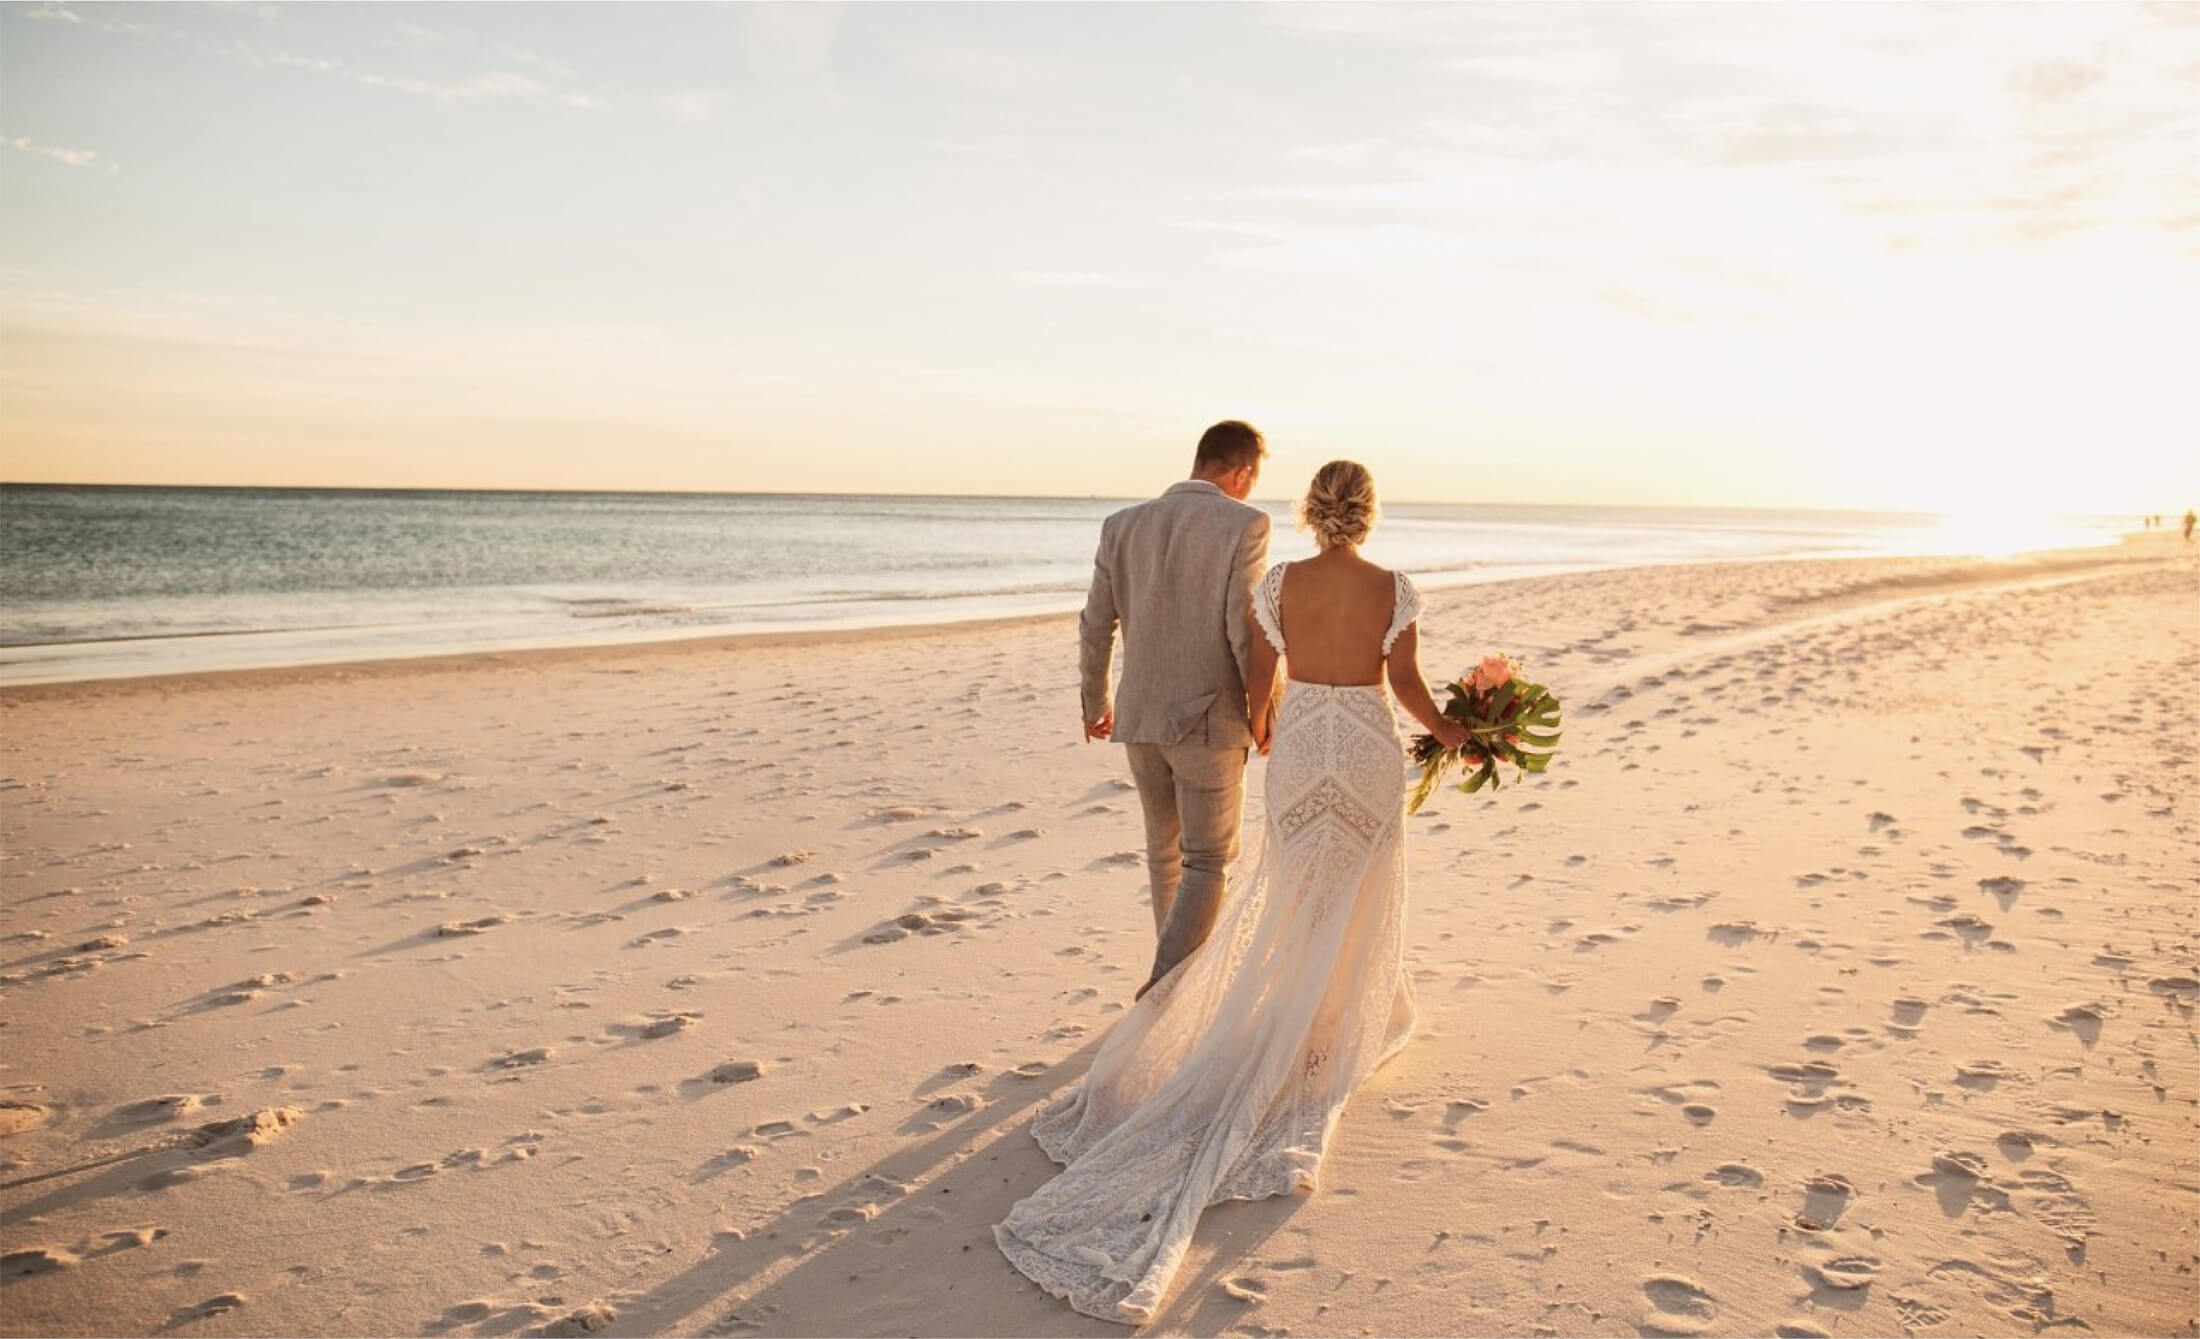 Groom and bride walking on beach